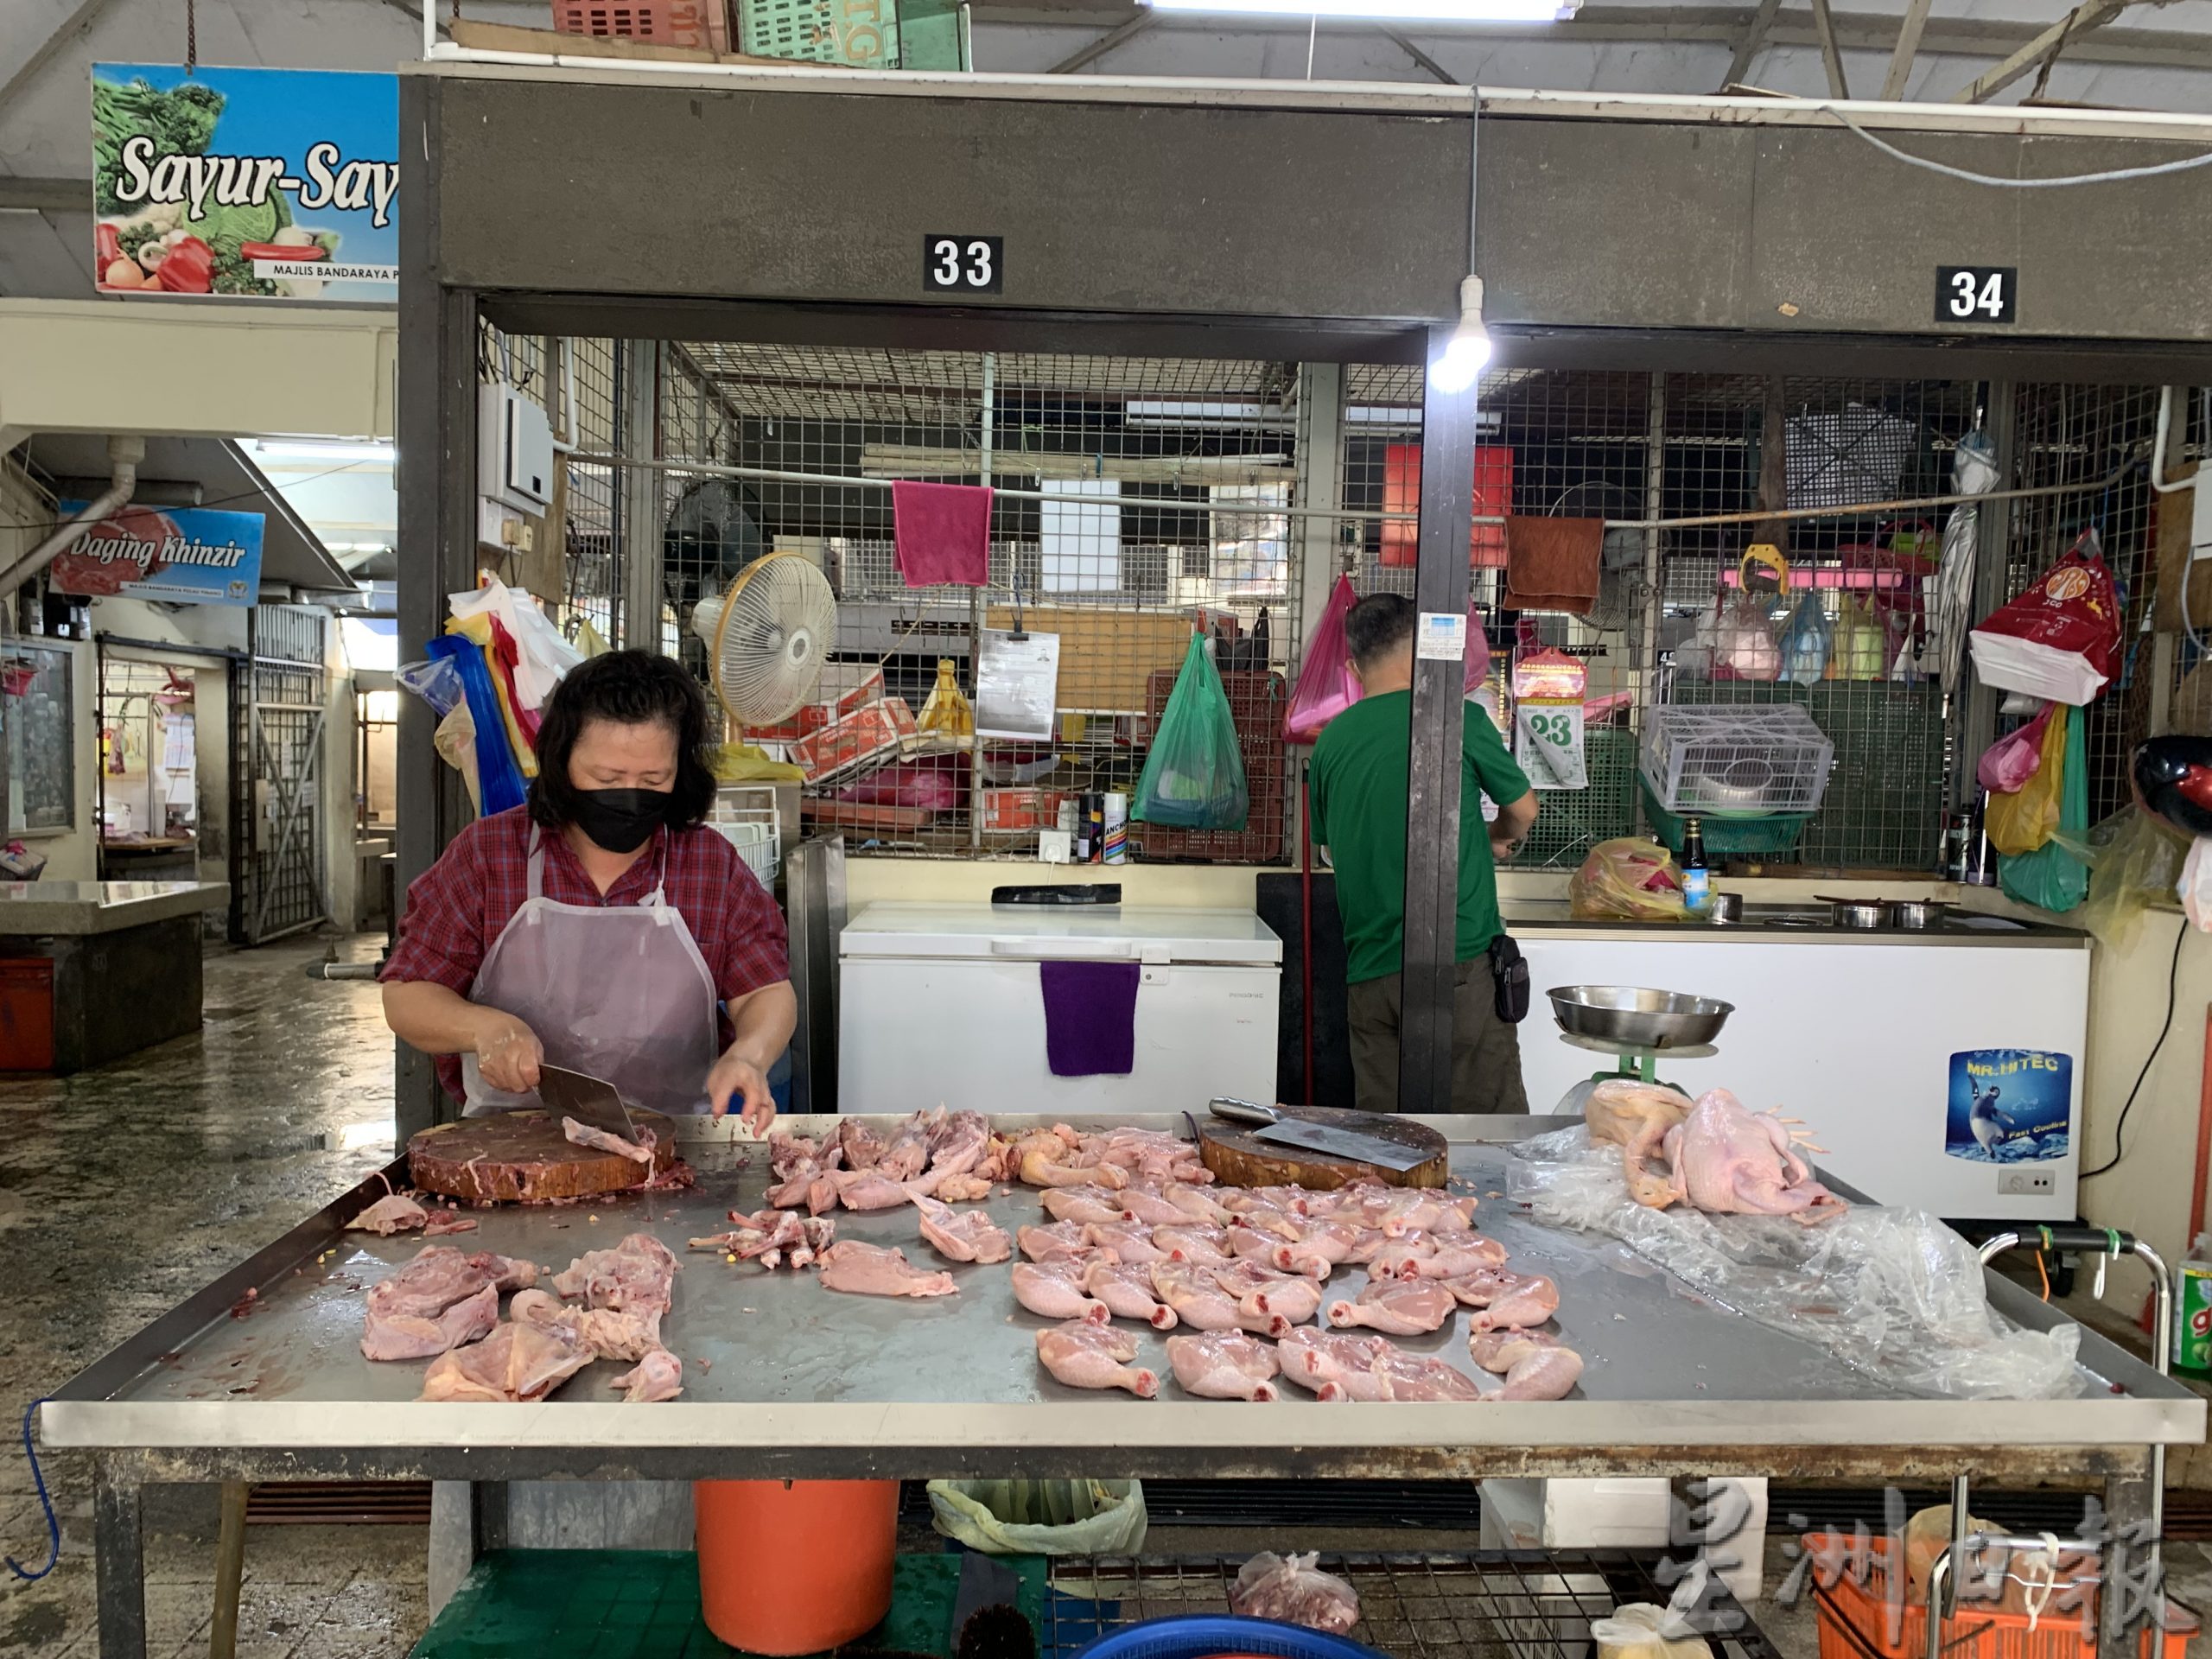 （大北马）肉鸡供应减 受制于价格管制 小贩苦不堪言